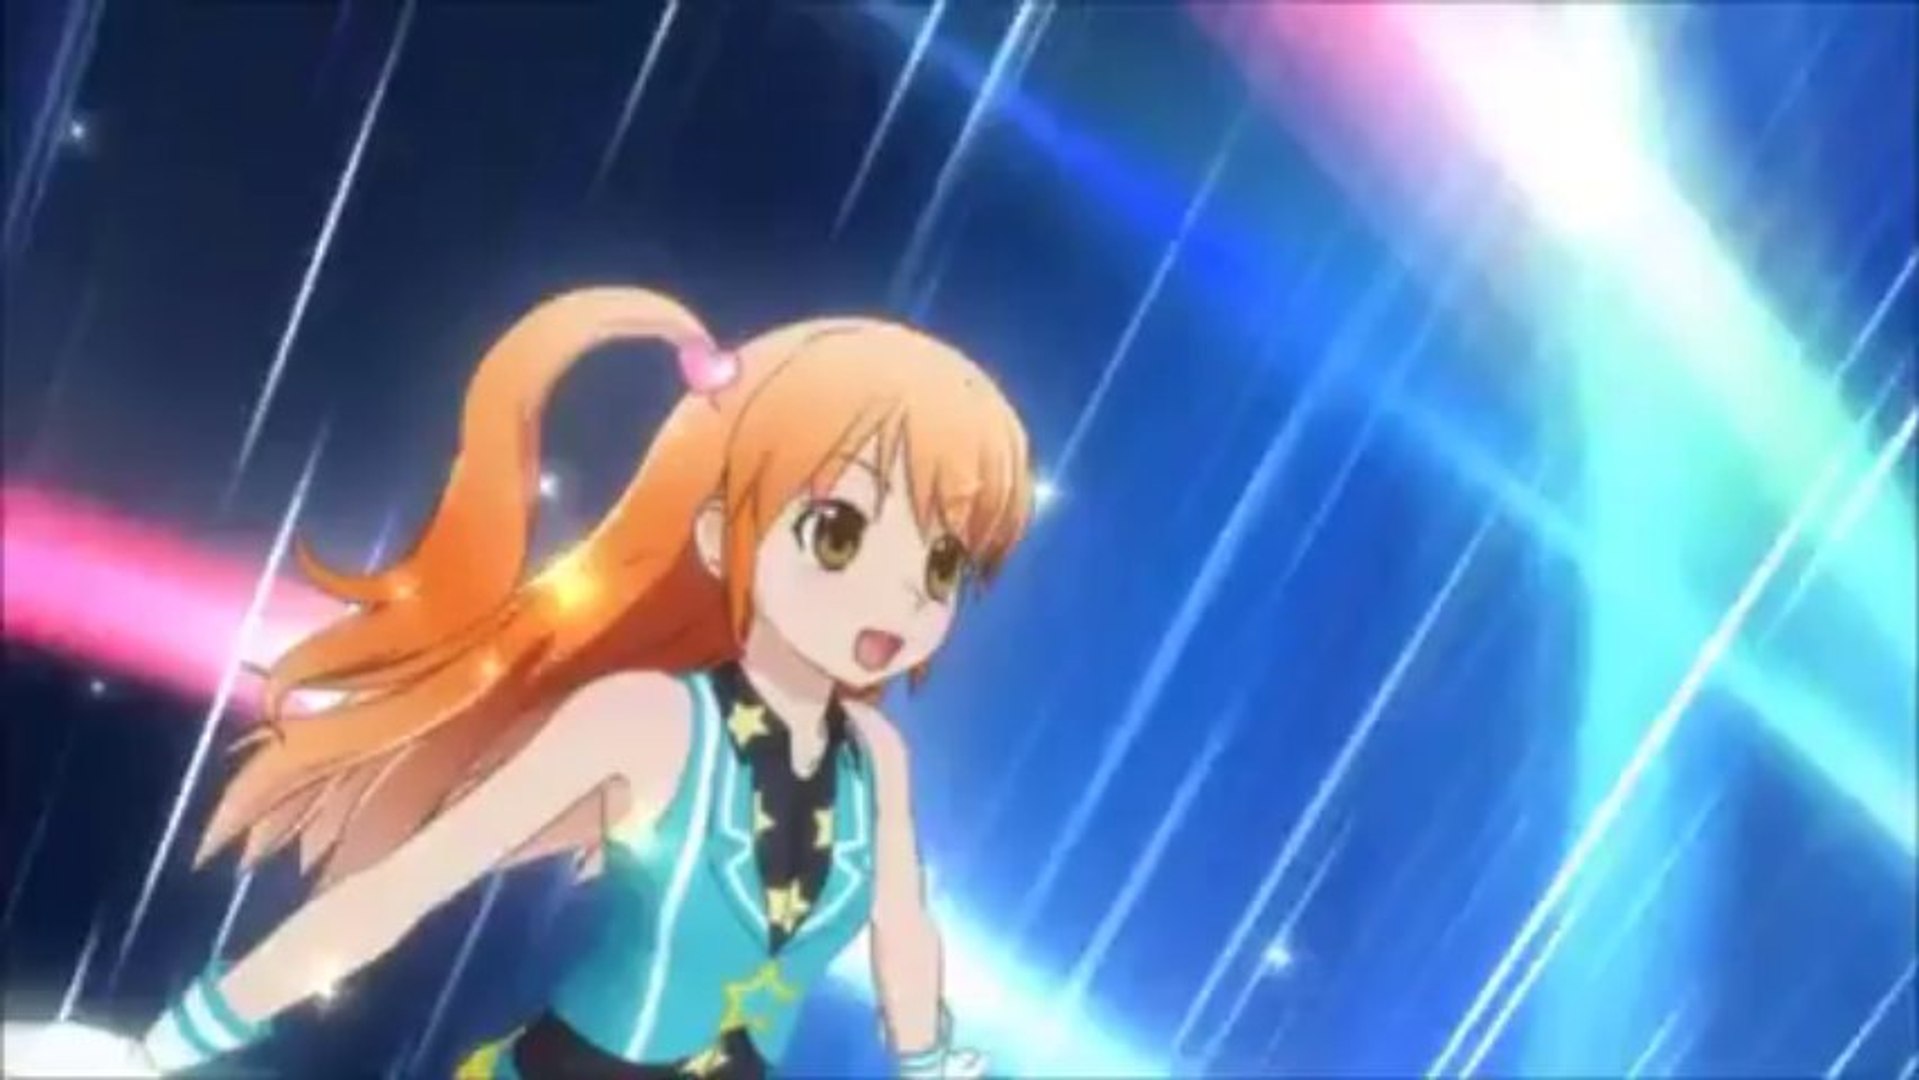 Pretty Rhythm Aurora Dream Episode 2 - Rizumu Aira - You May Dream